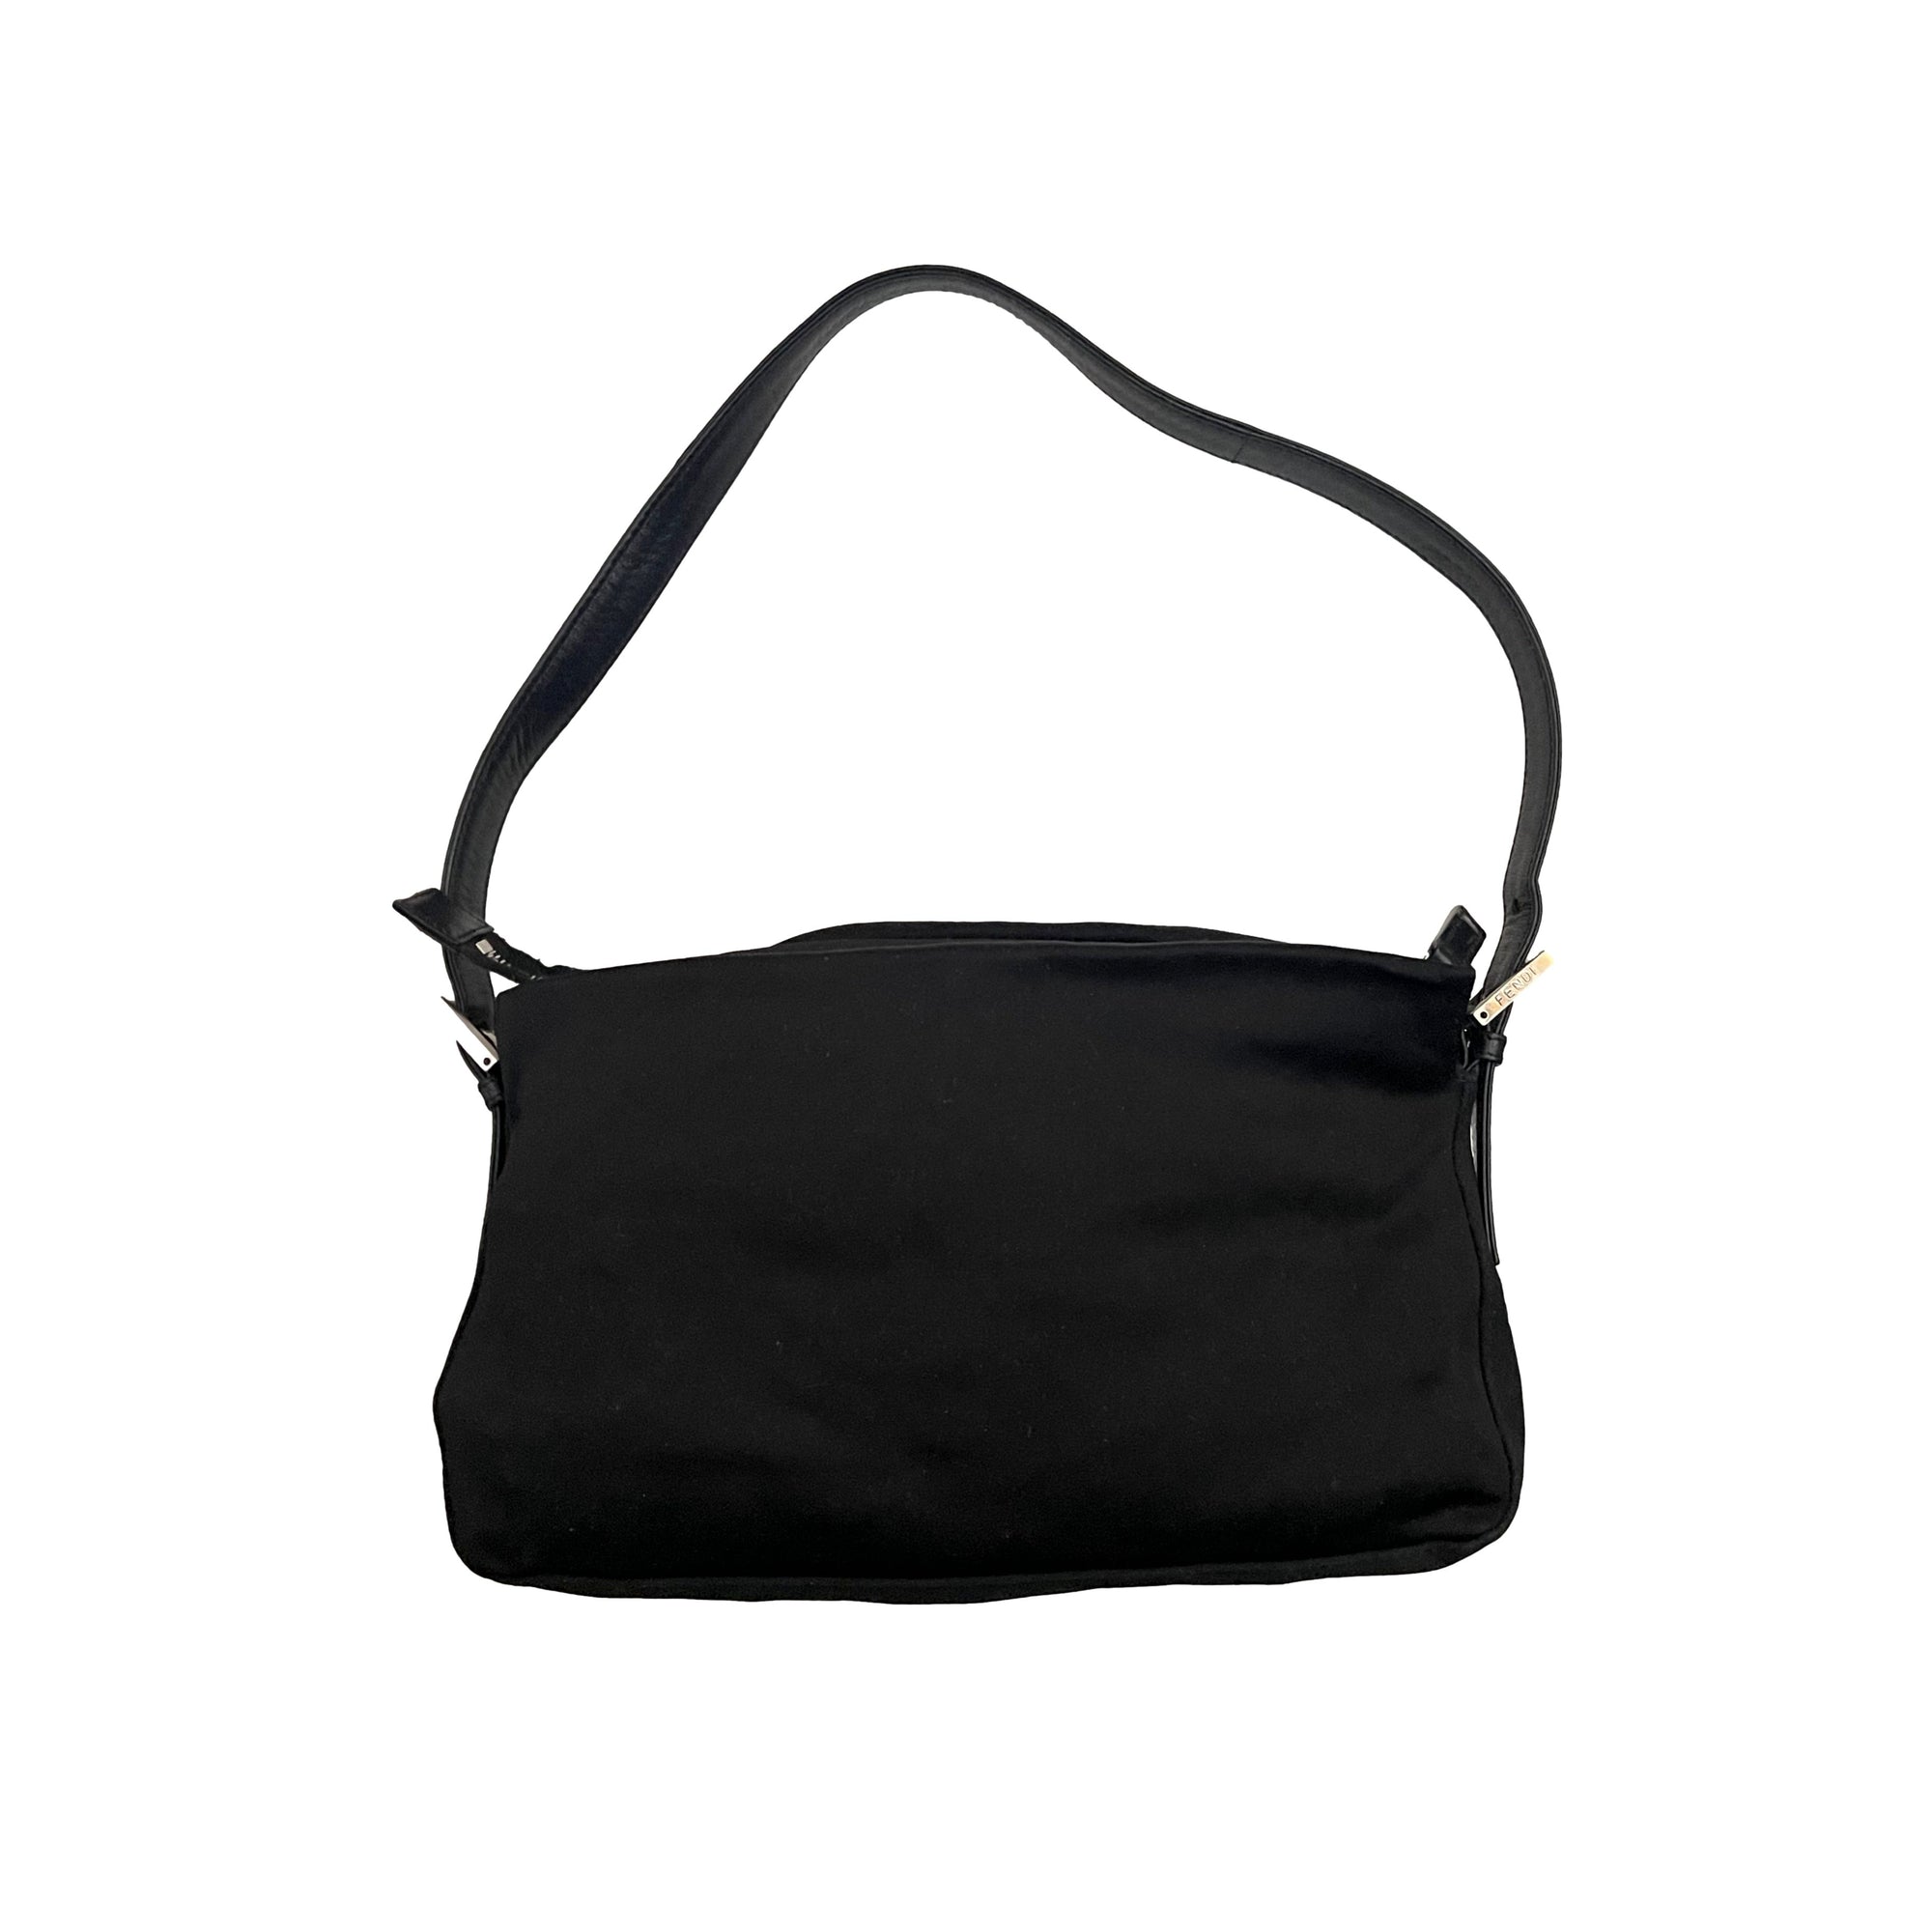 Fendi Black Neoprene Shoulder Bag - Handbags